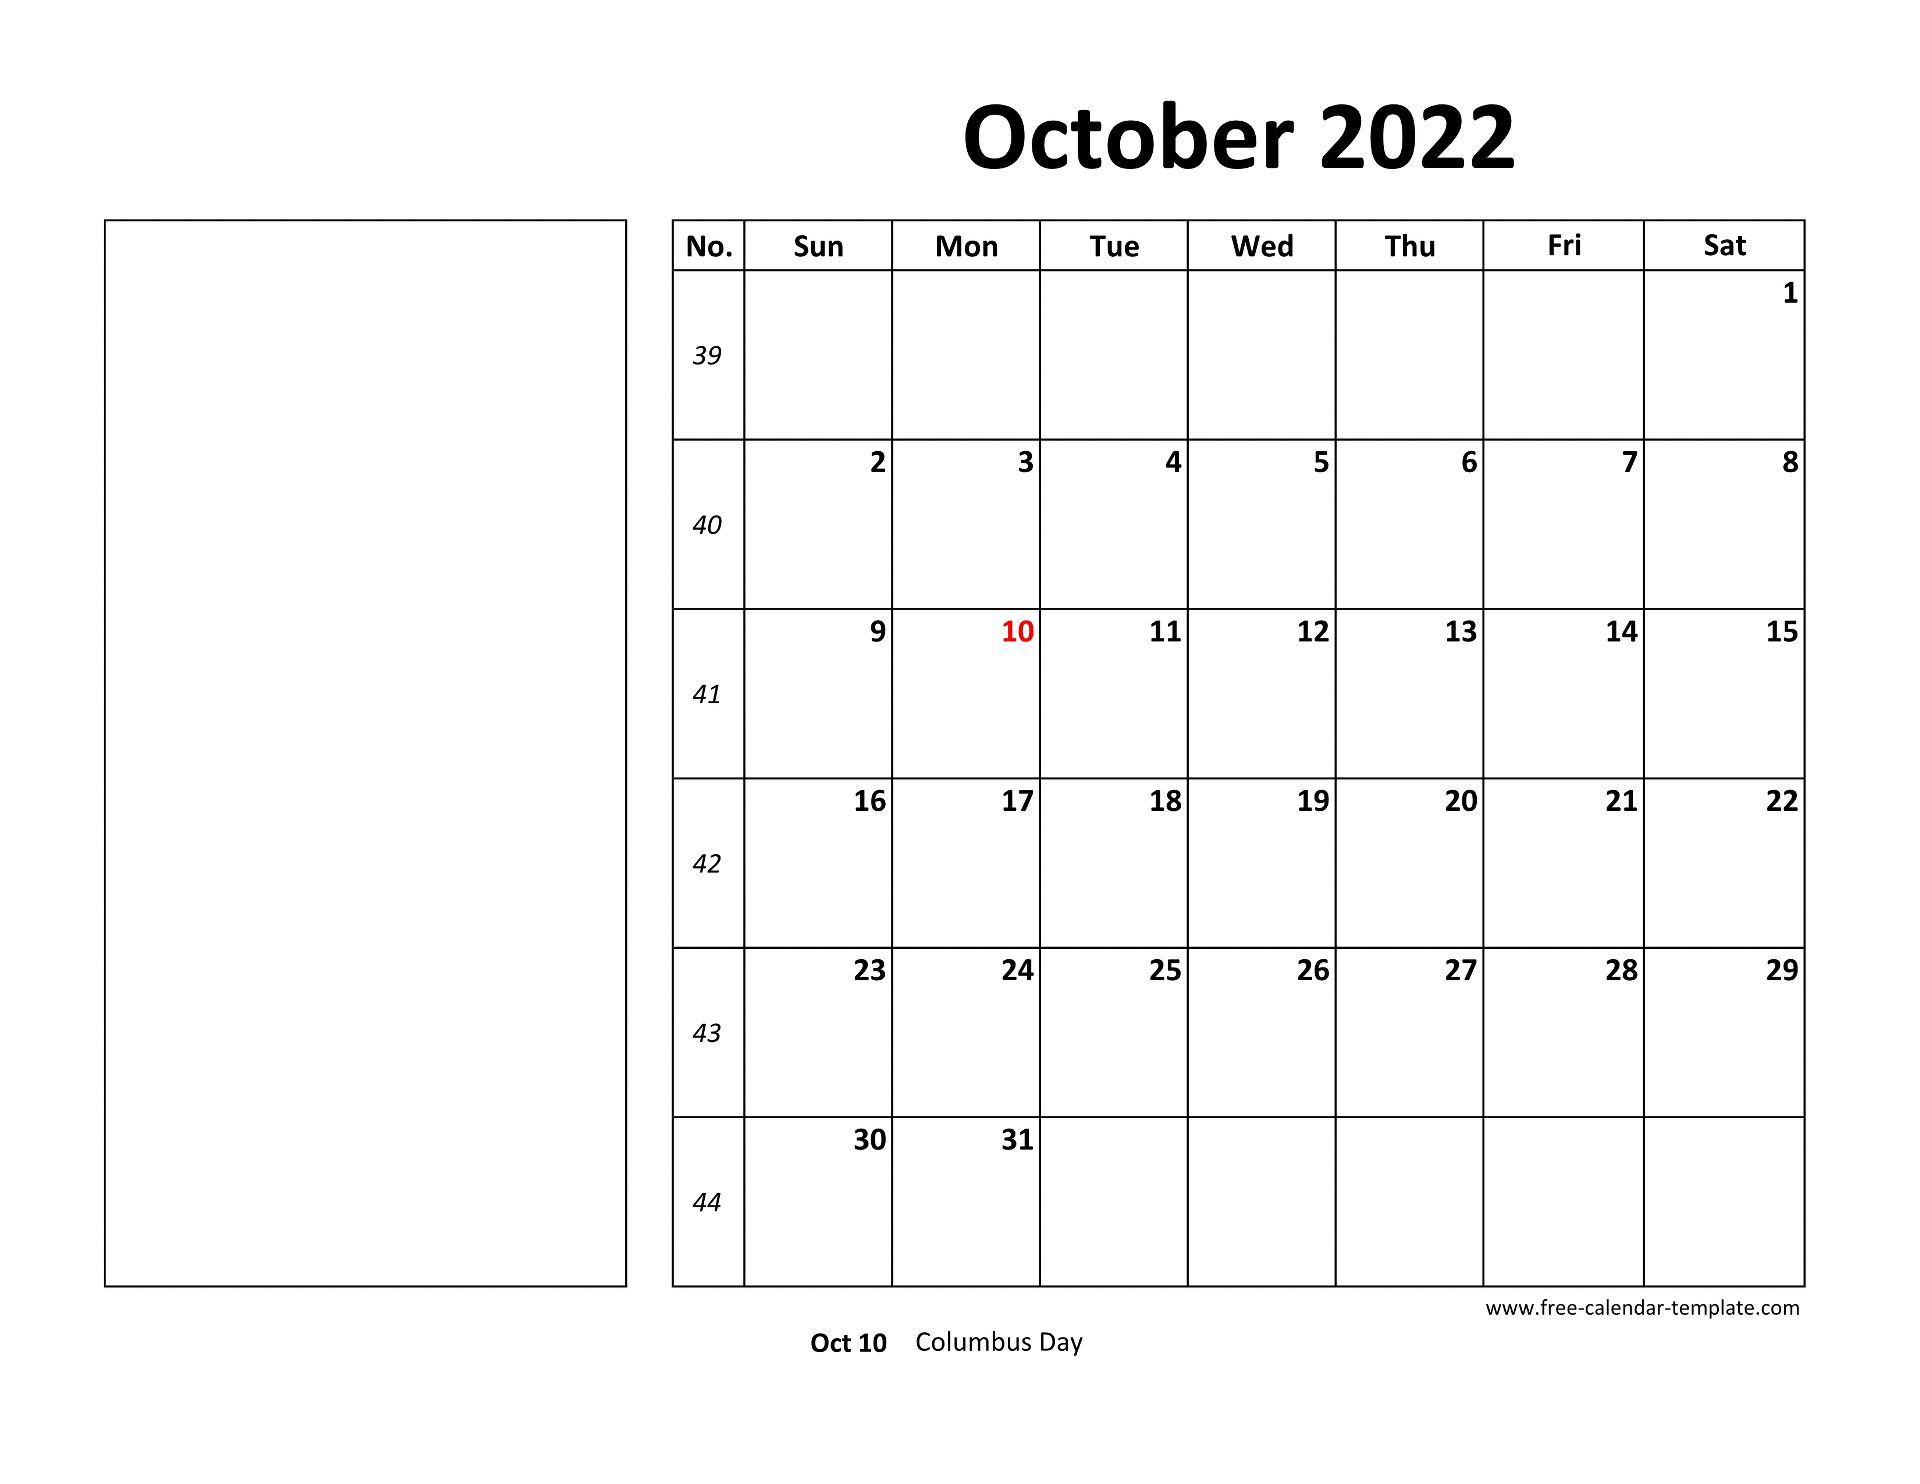 printable october 2022 calendar box and lines for notes free calendar template com